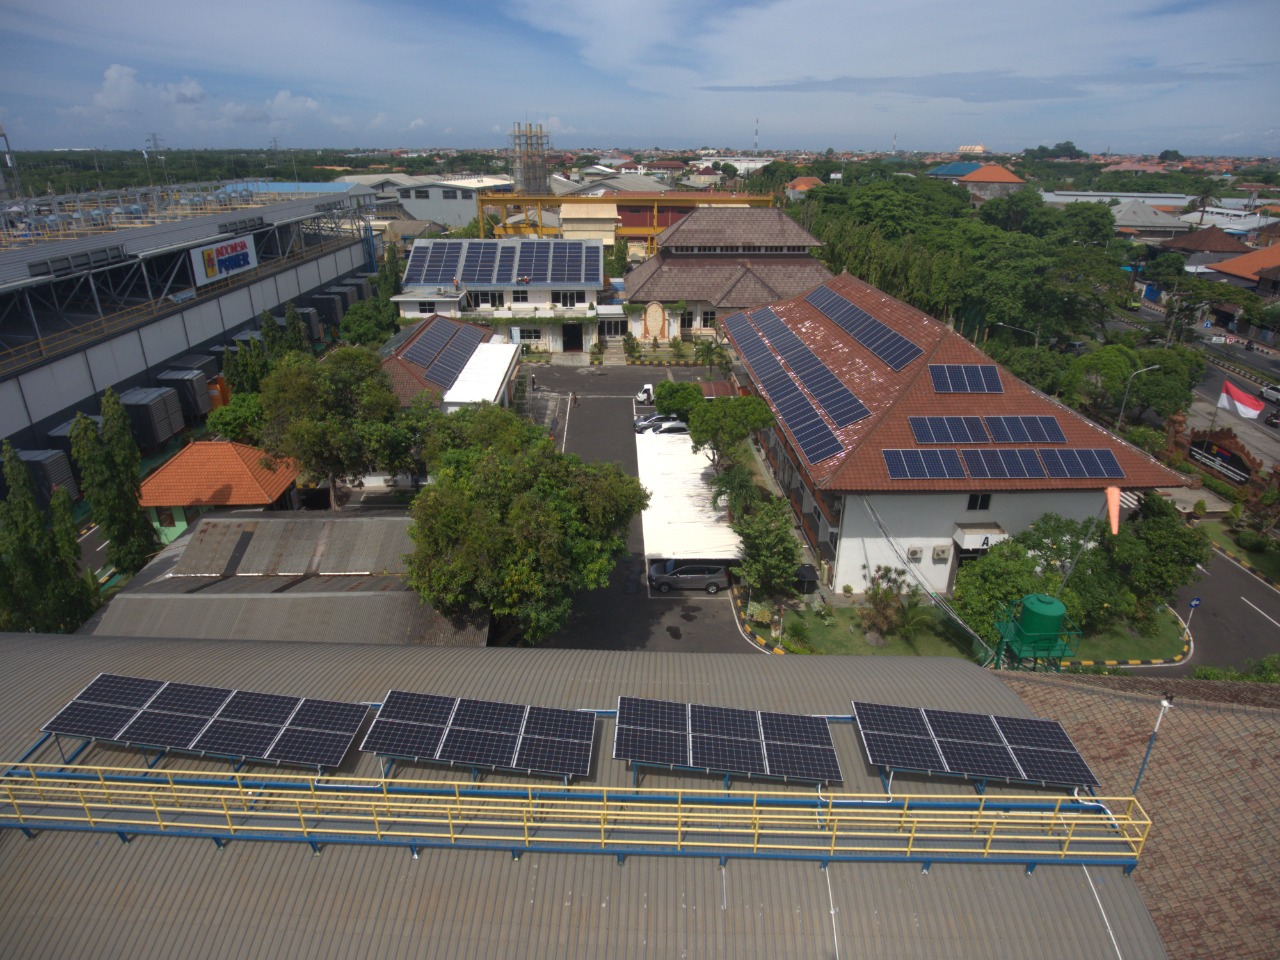 Dukung Energi Bersih, PLN Pasang PLTS Atap 489,72 kWp di Seluruh Kantor PLN Bali